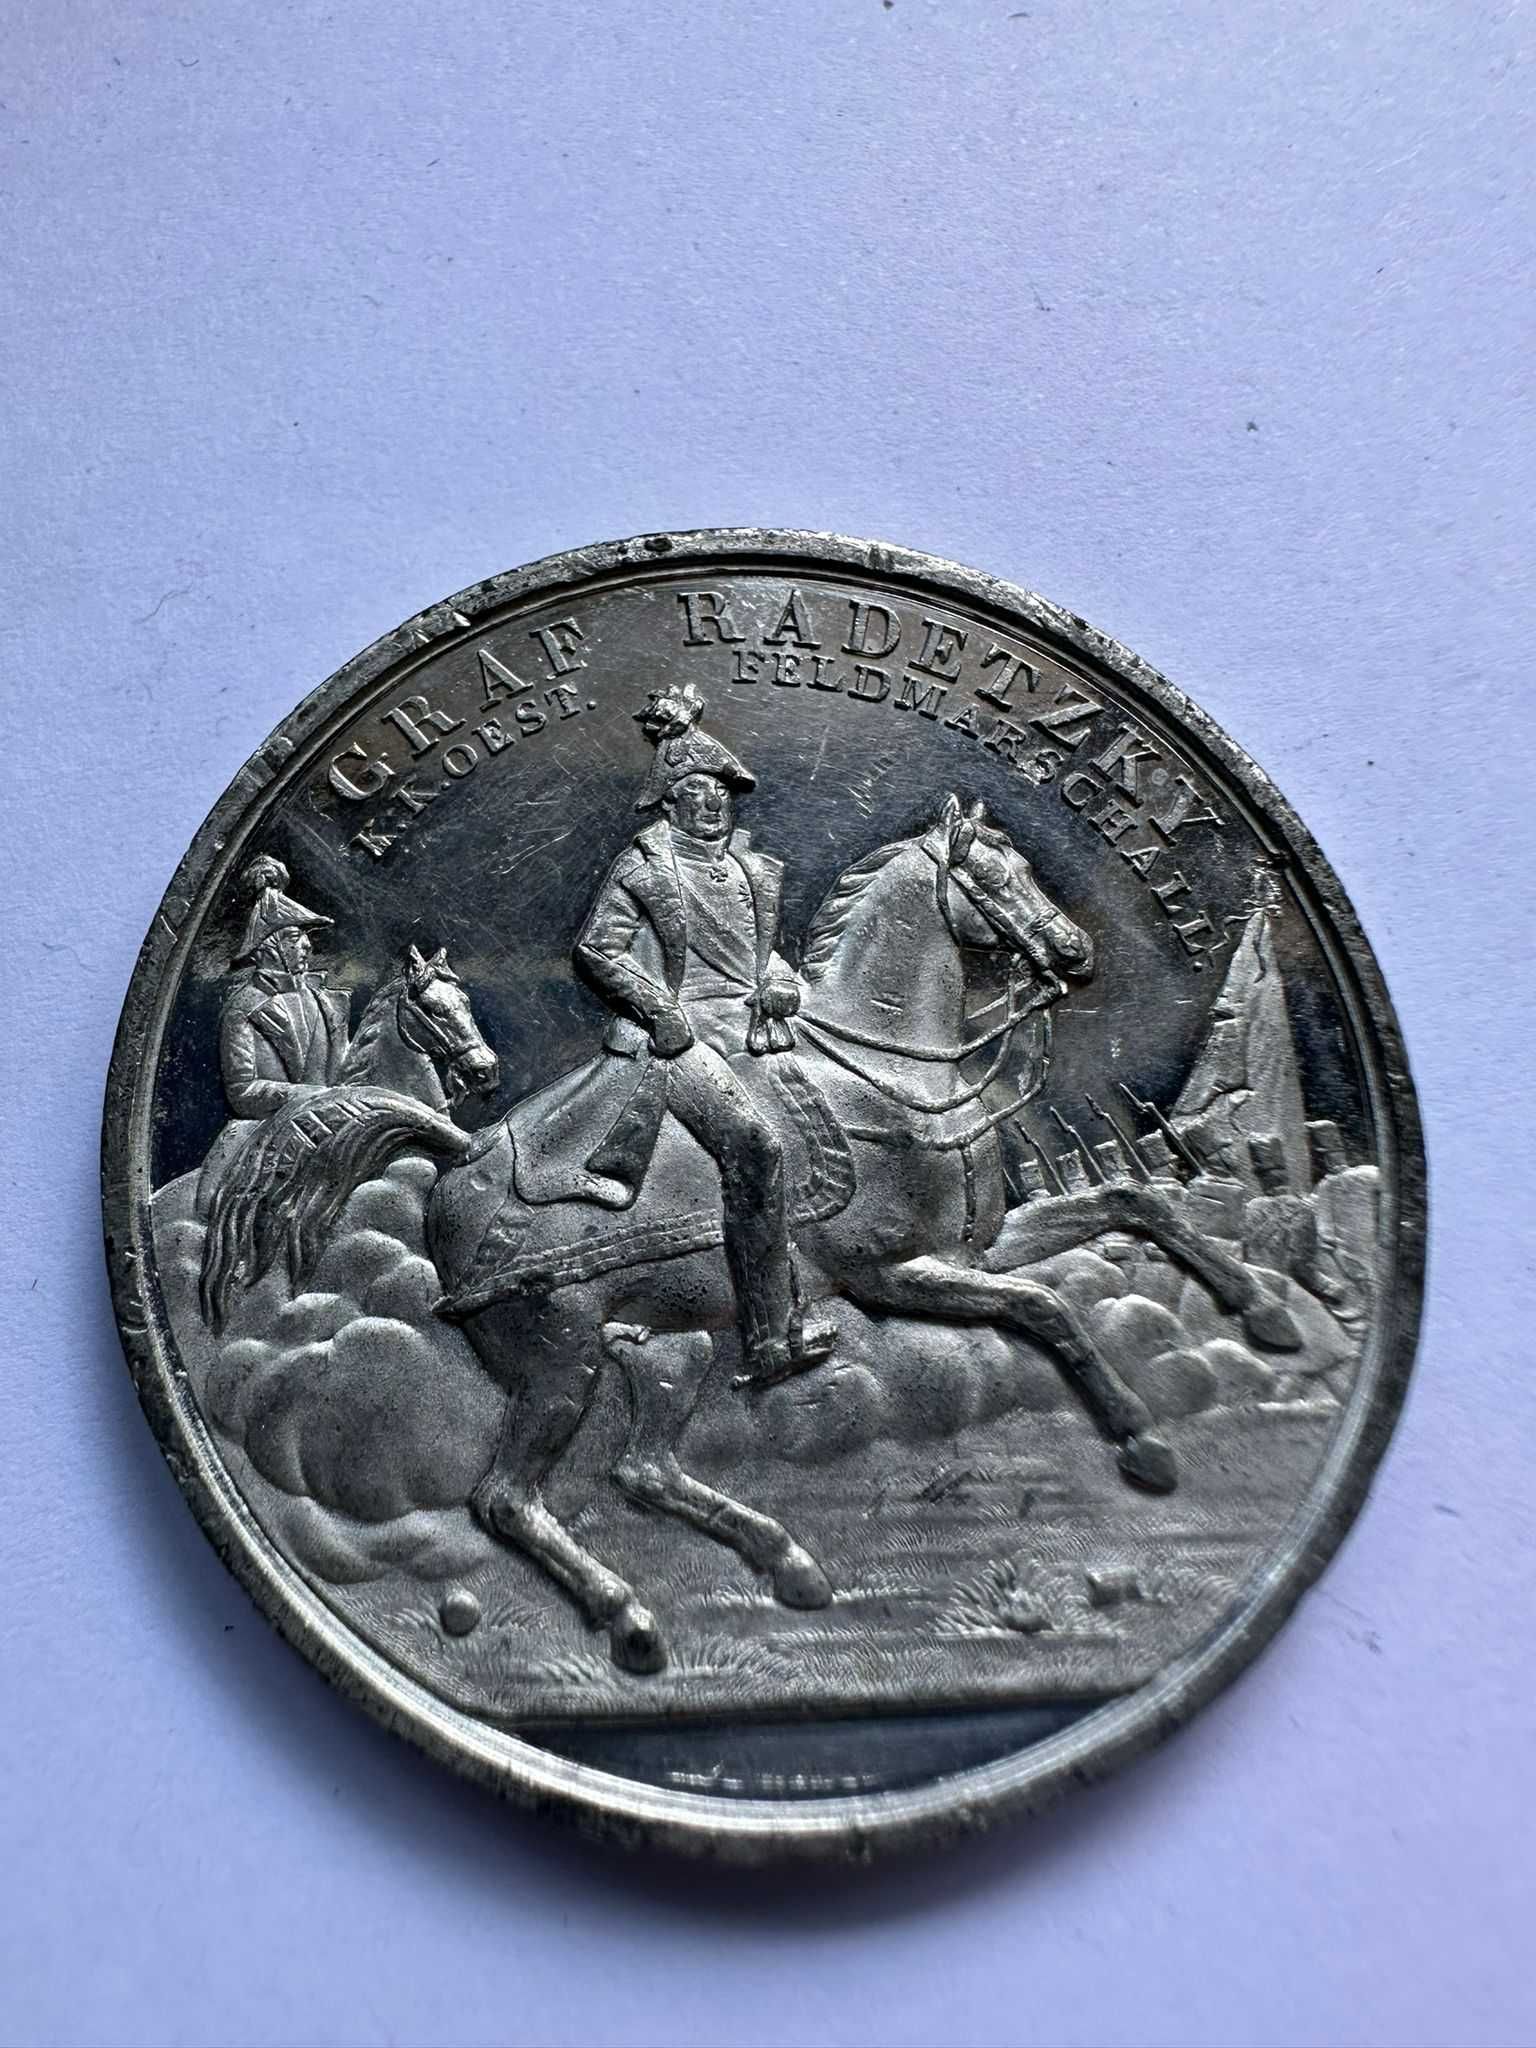 Medalia Contele Mareșal Radetzky pentru victoriile sale, 1848